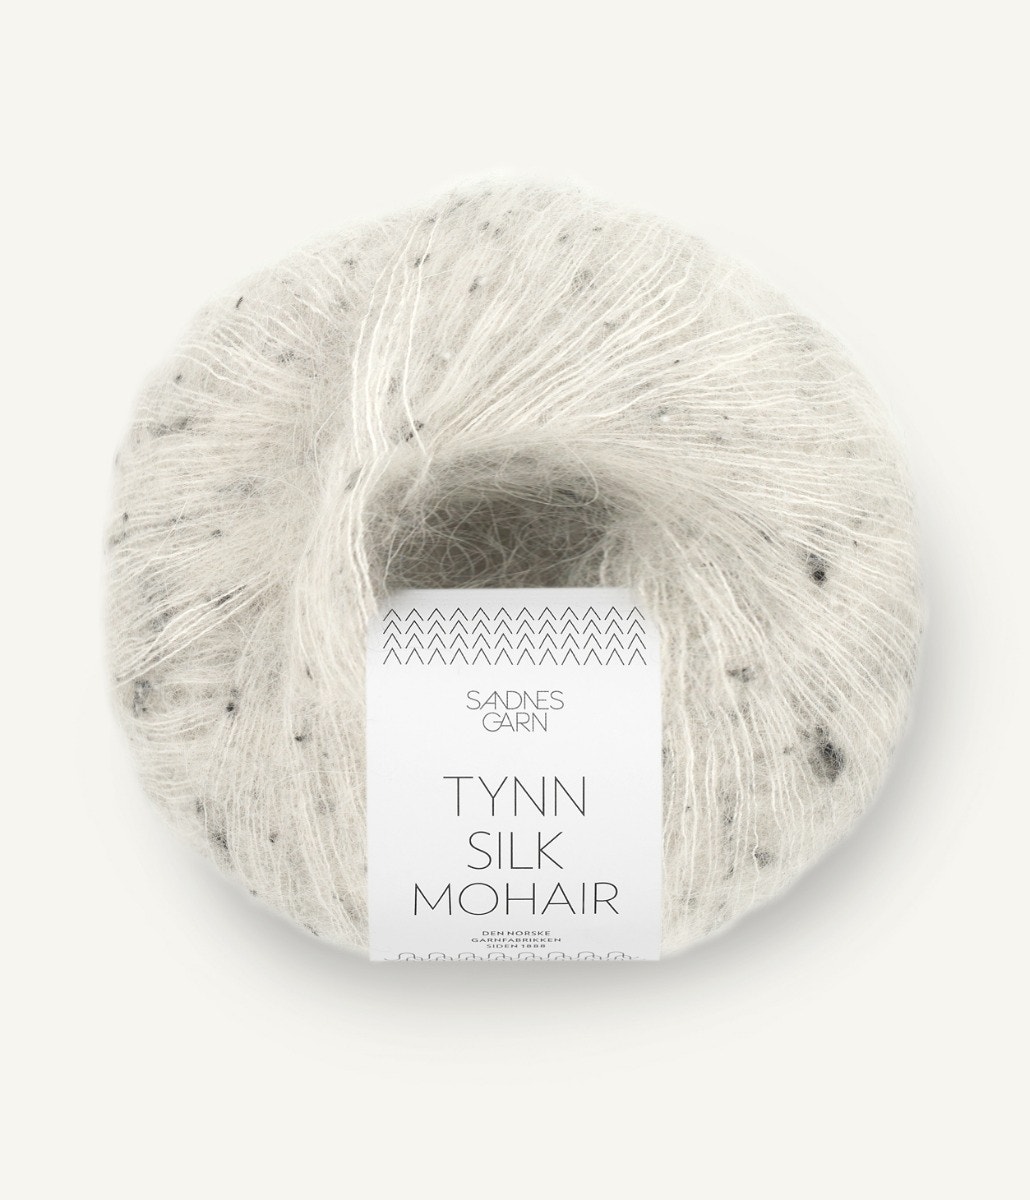 Tynn Silk Mohair von Sandnes Garn 1199 - salt'n pepper tweed